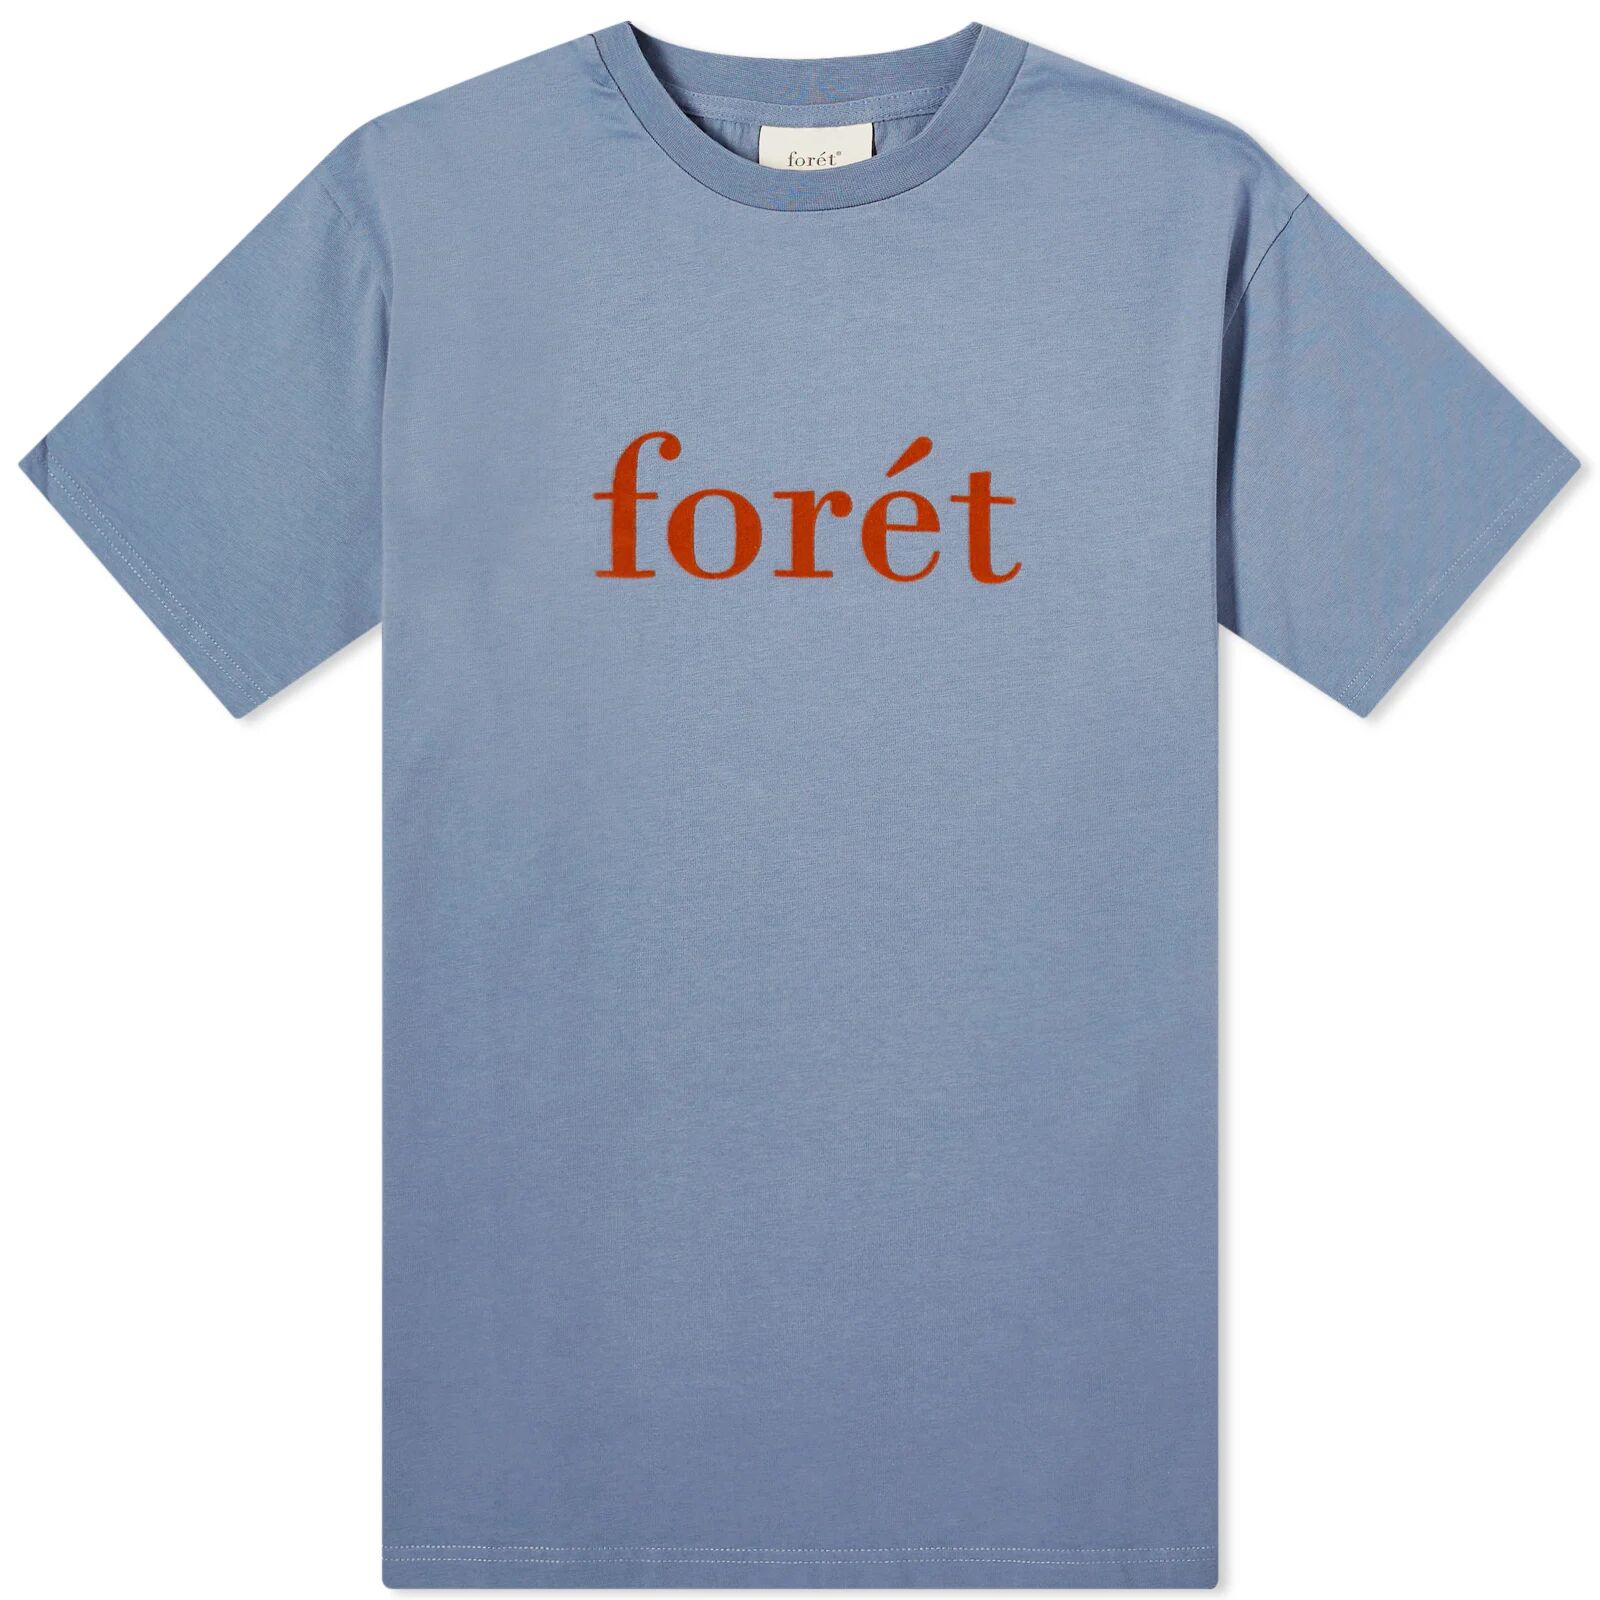 Foret Men's Resin T-Shirt in Vintage Blue, Size Medium